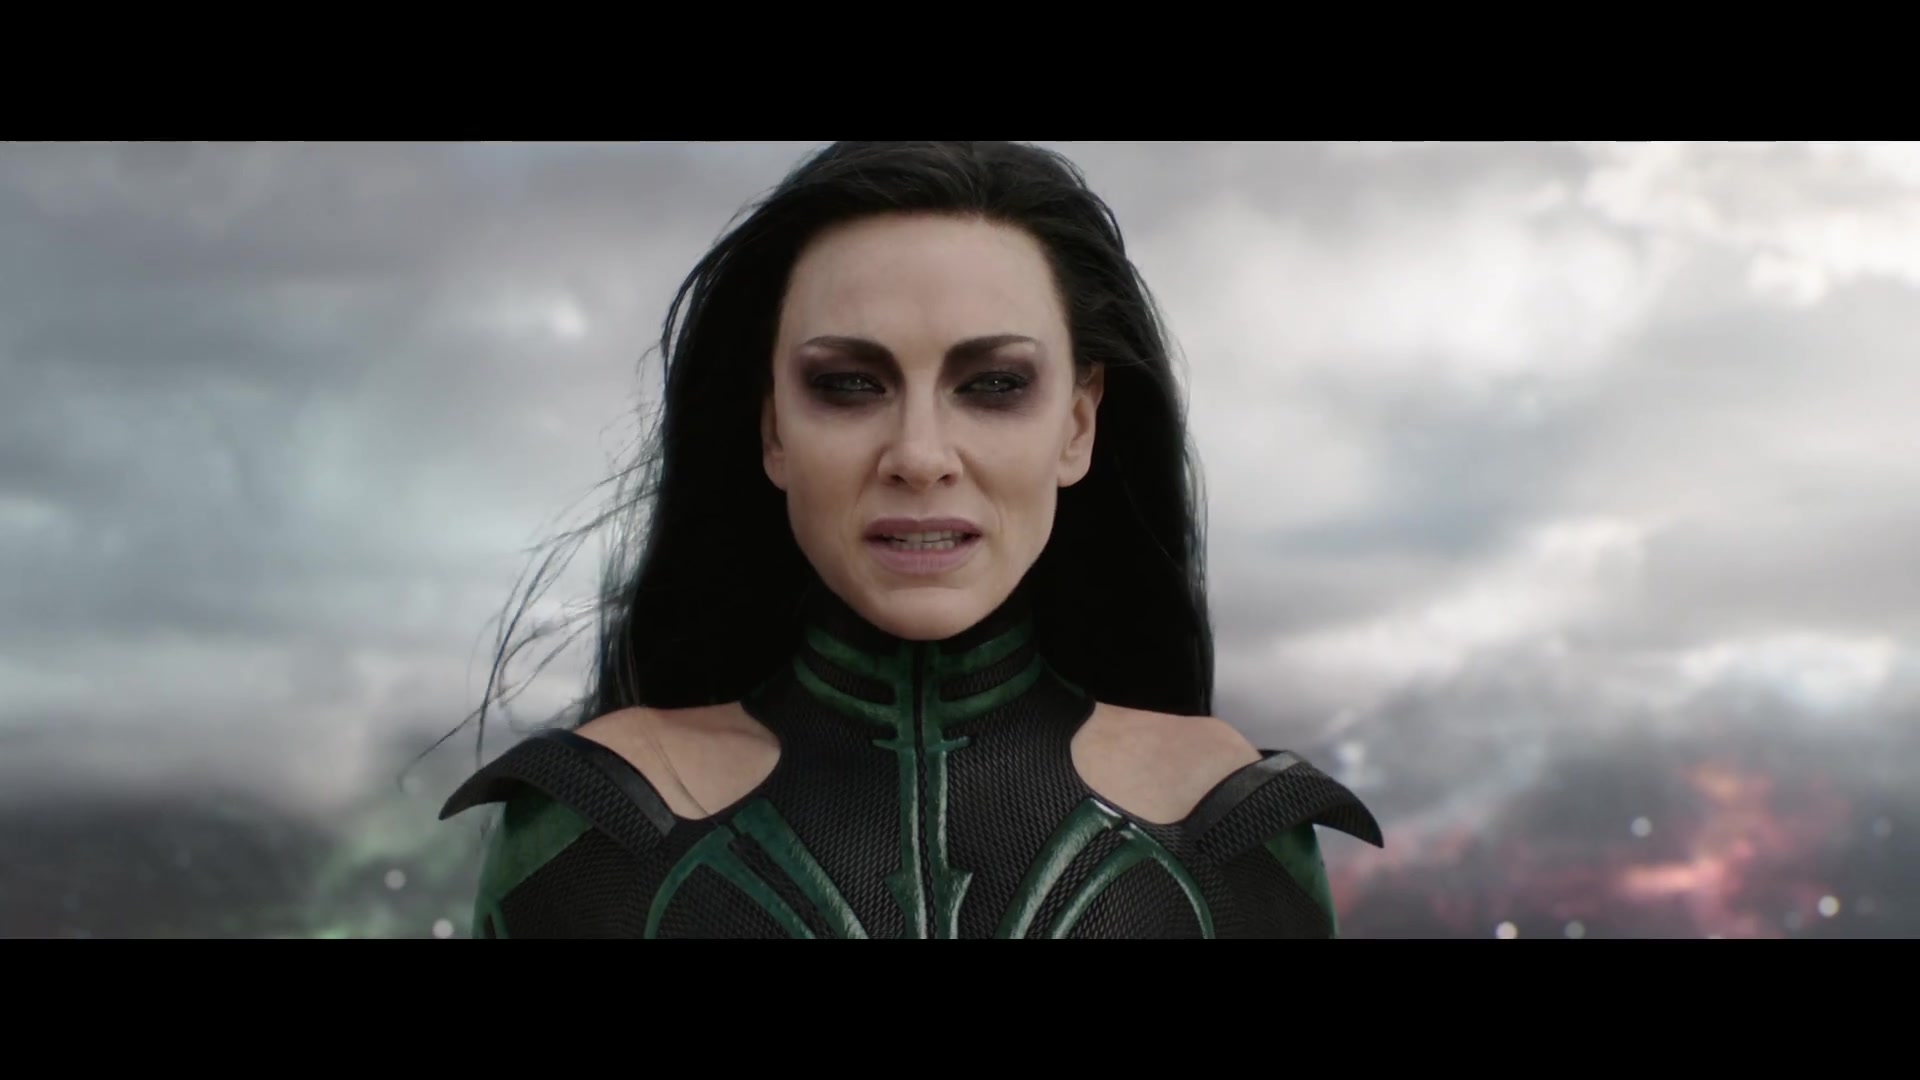 Thor Ragnarok’s teaser trailer is here! See Cate Blanchett as Hela!